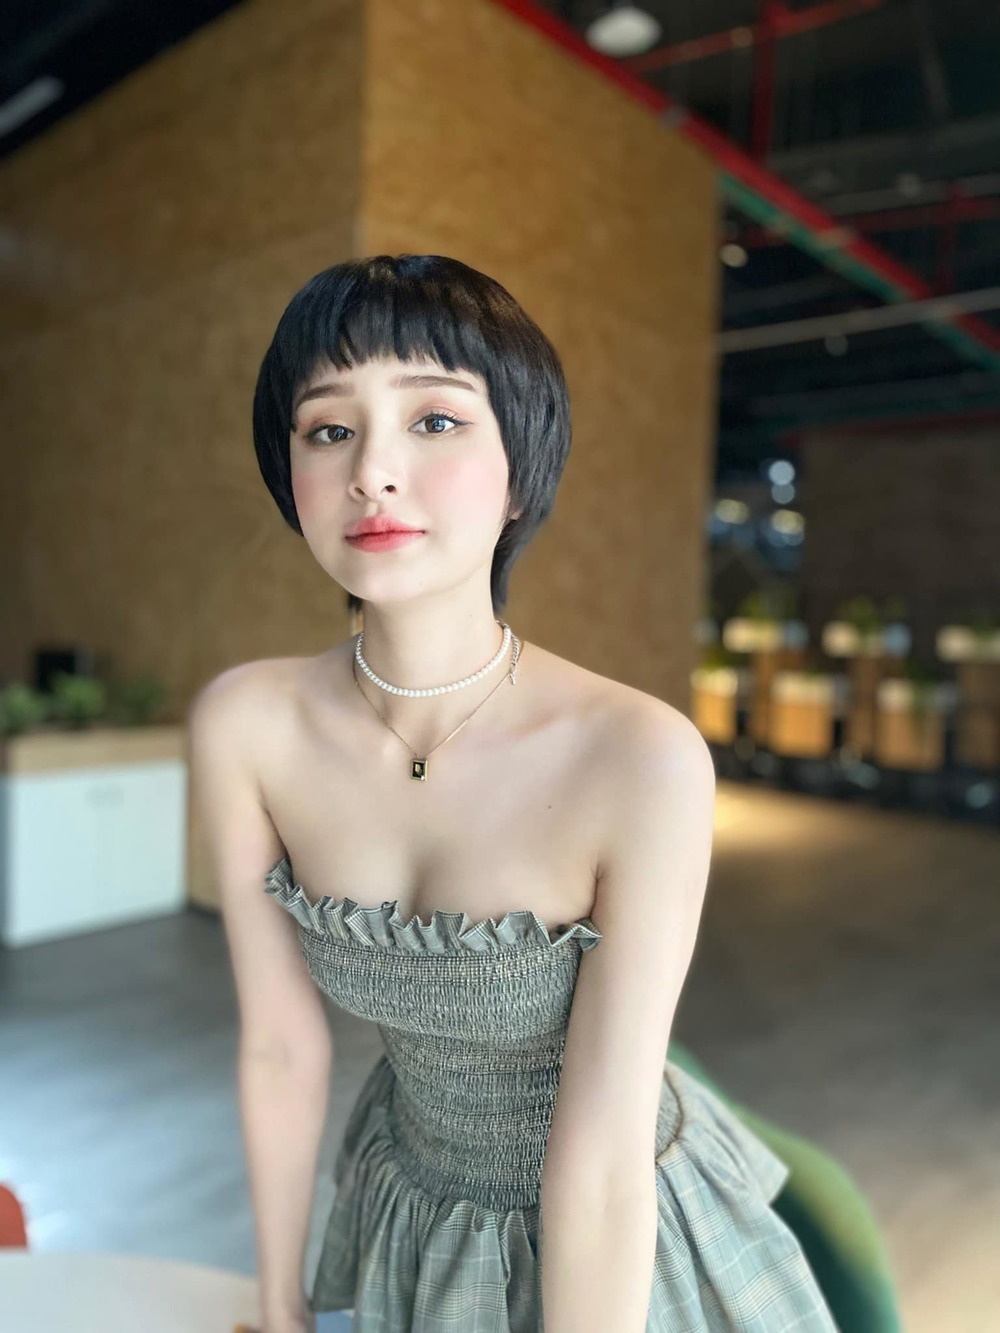 Sao Việt đầu tiên bênh vực nữ ca sĩ gen Z bị đồn làm 'tiểu tam giật chồng', cho rằng có sự nhầm lẫn - ảnh 3